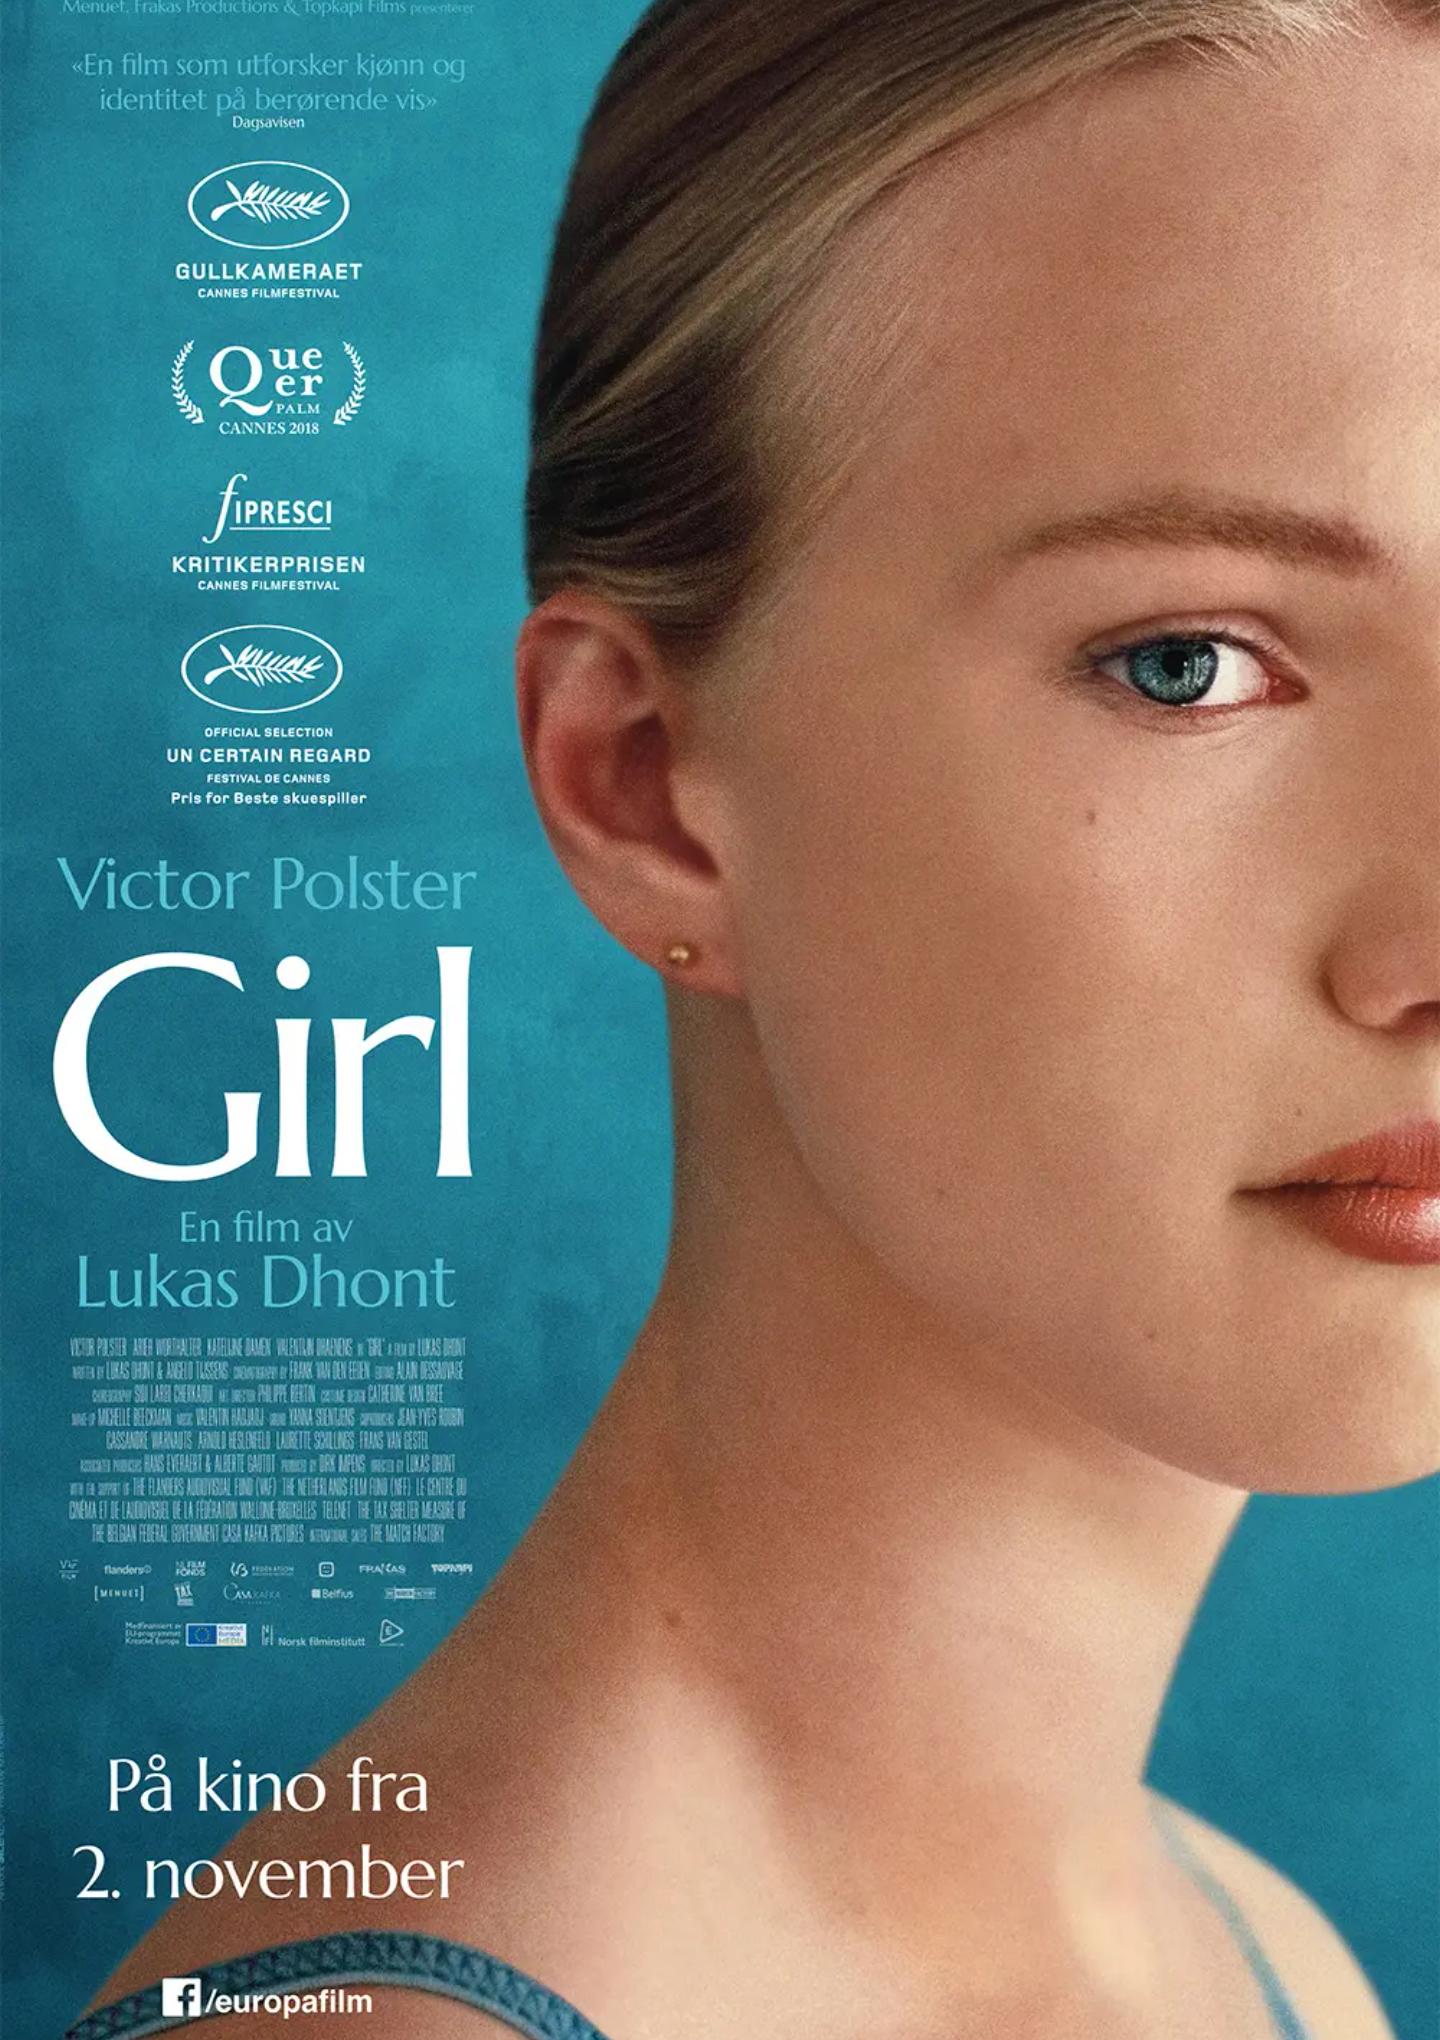 Plakat for 'Girl'